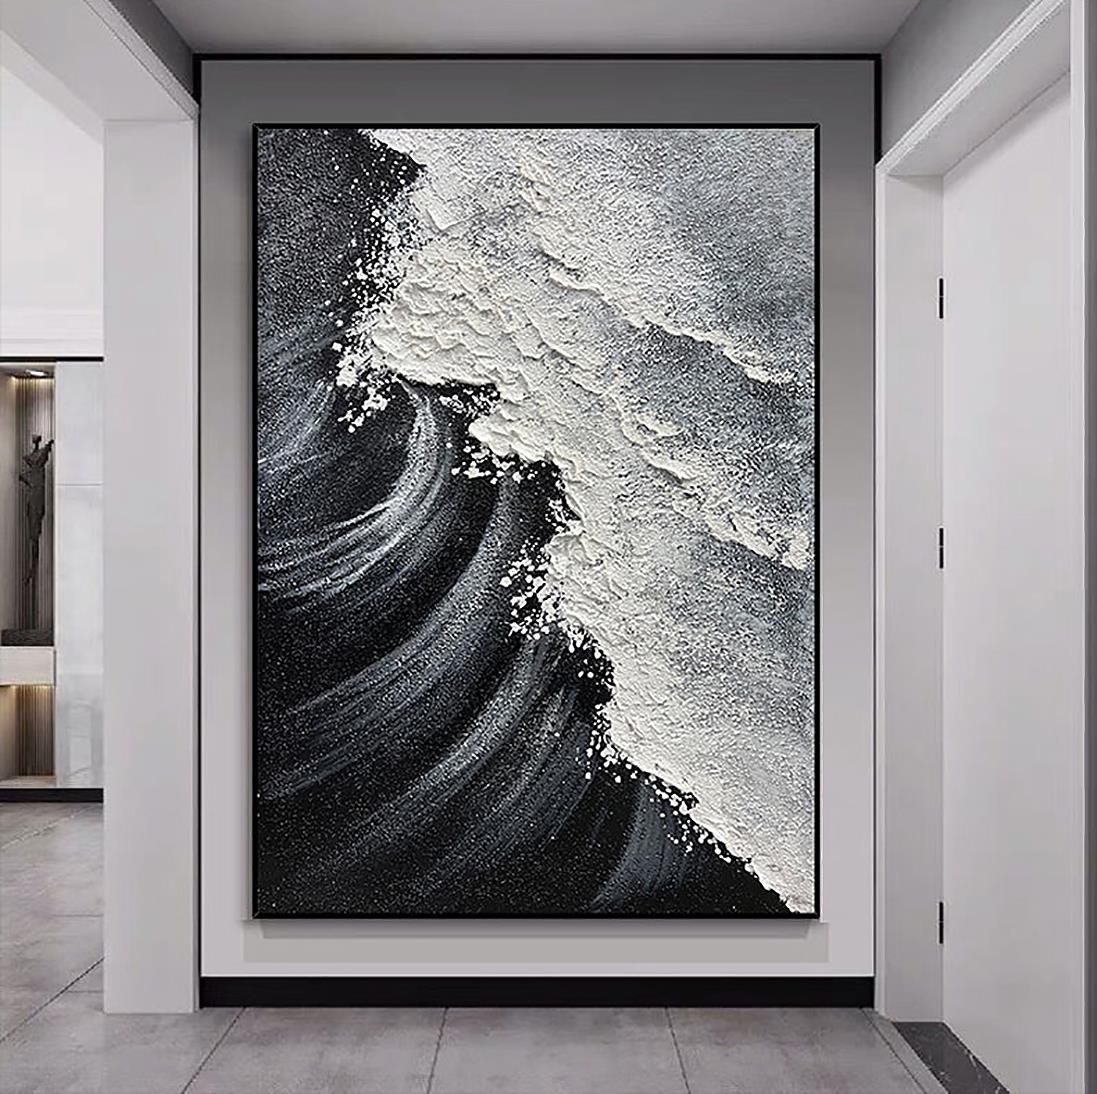 ブラック ホワイト ビーチ ウェーブ サンド 01 壁装飾油絵